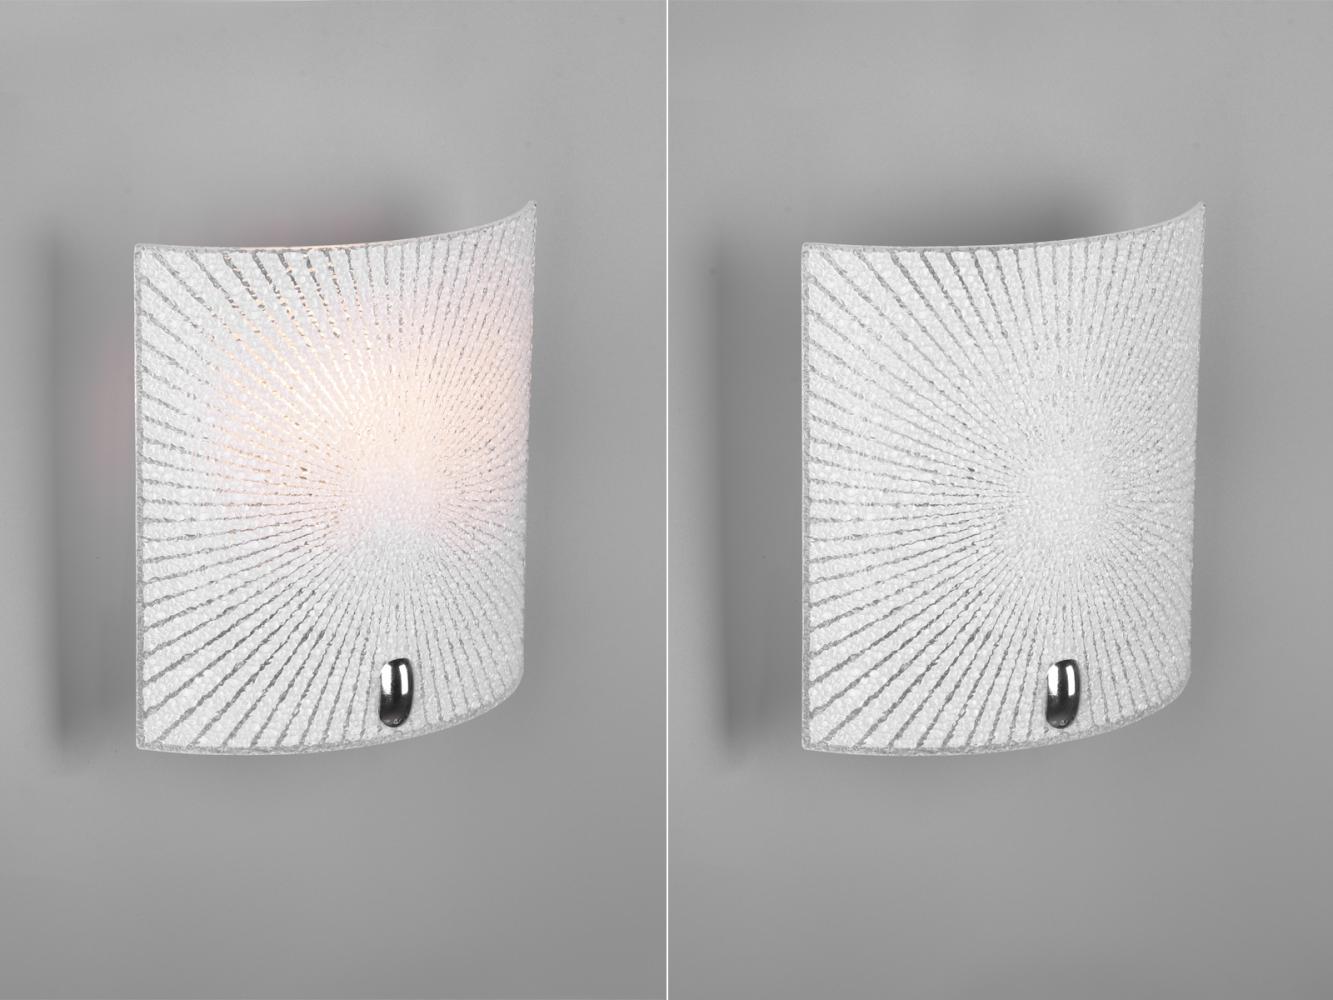 Flache LED Wandleuchte mit Glas Lampenschirm weiß, 20 x 22cm Bild 1